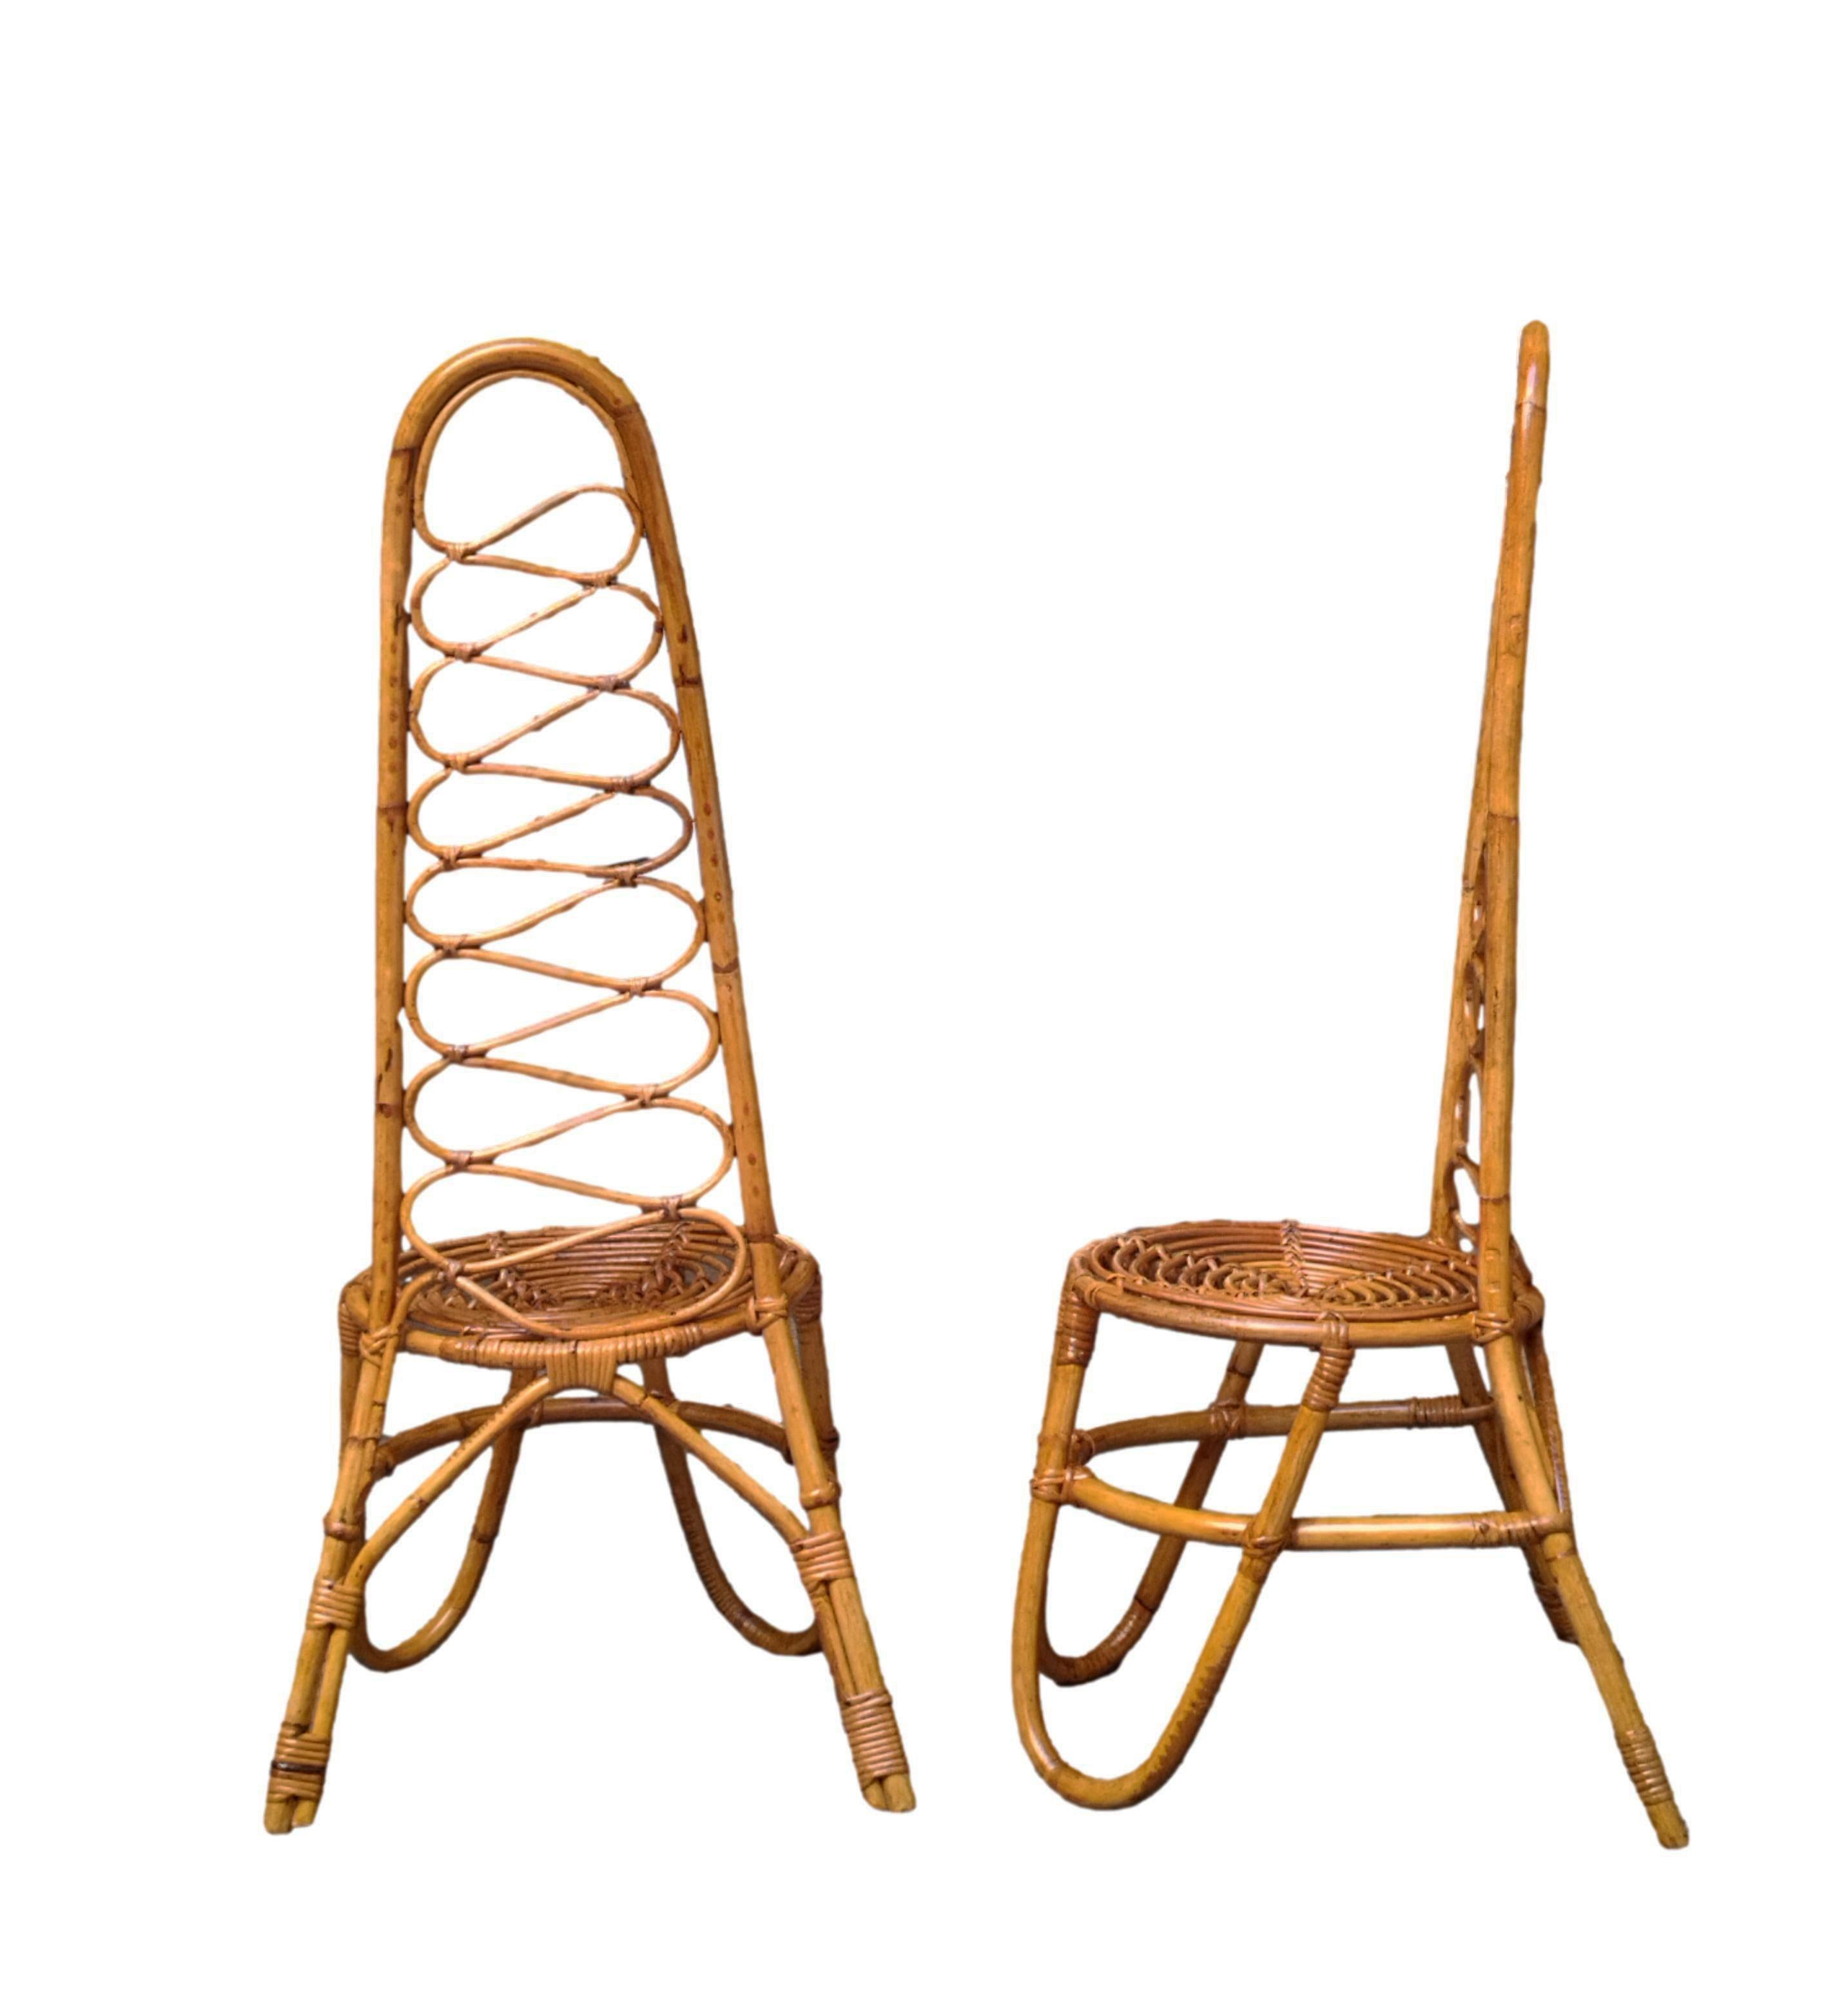 Rare paire de chaises basses originales des années 1960 avec dossier haut incurvé en bambou, beau design et assise confortable. Production italienne 1960.